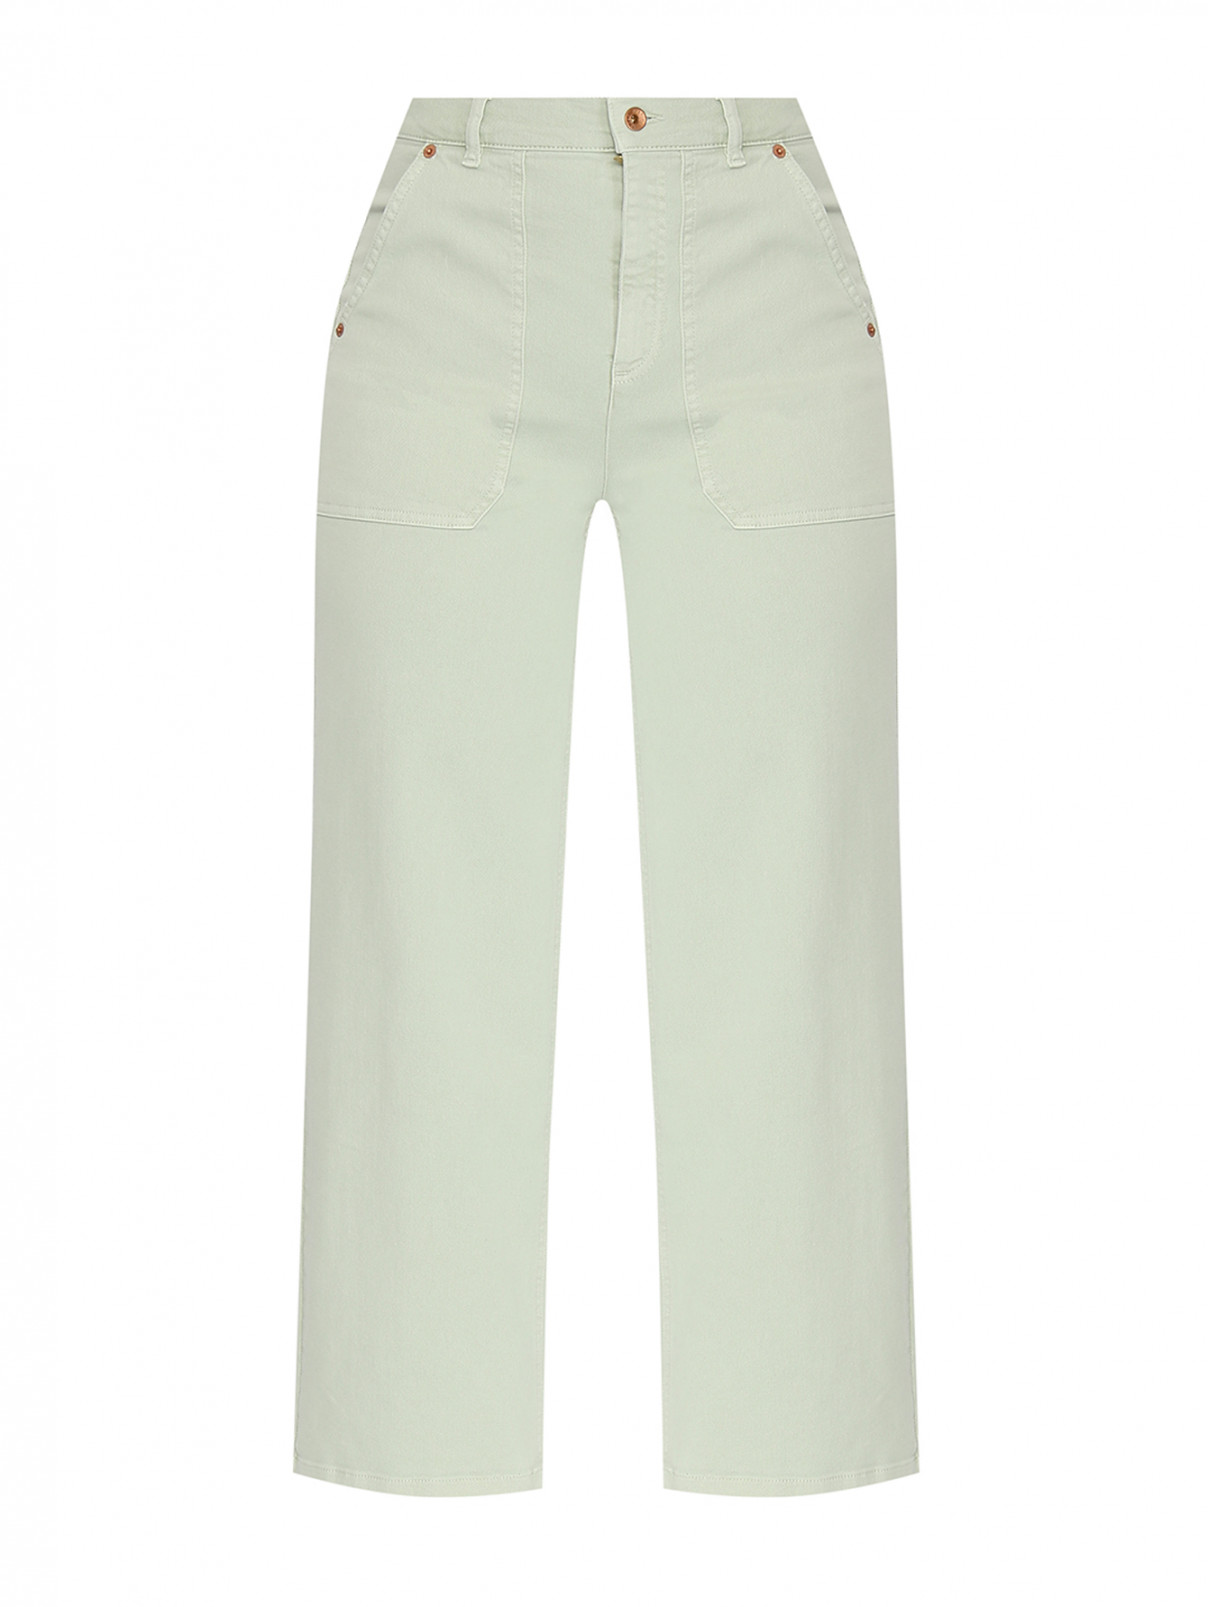 Укороченные джинсы широкого кроя Marina Rinaldi  –  Общий вид  – Цвет:  Зеленый